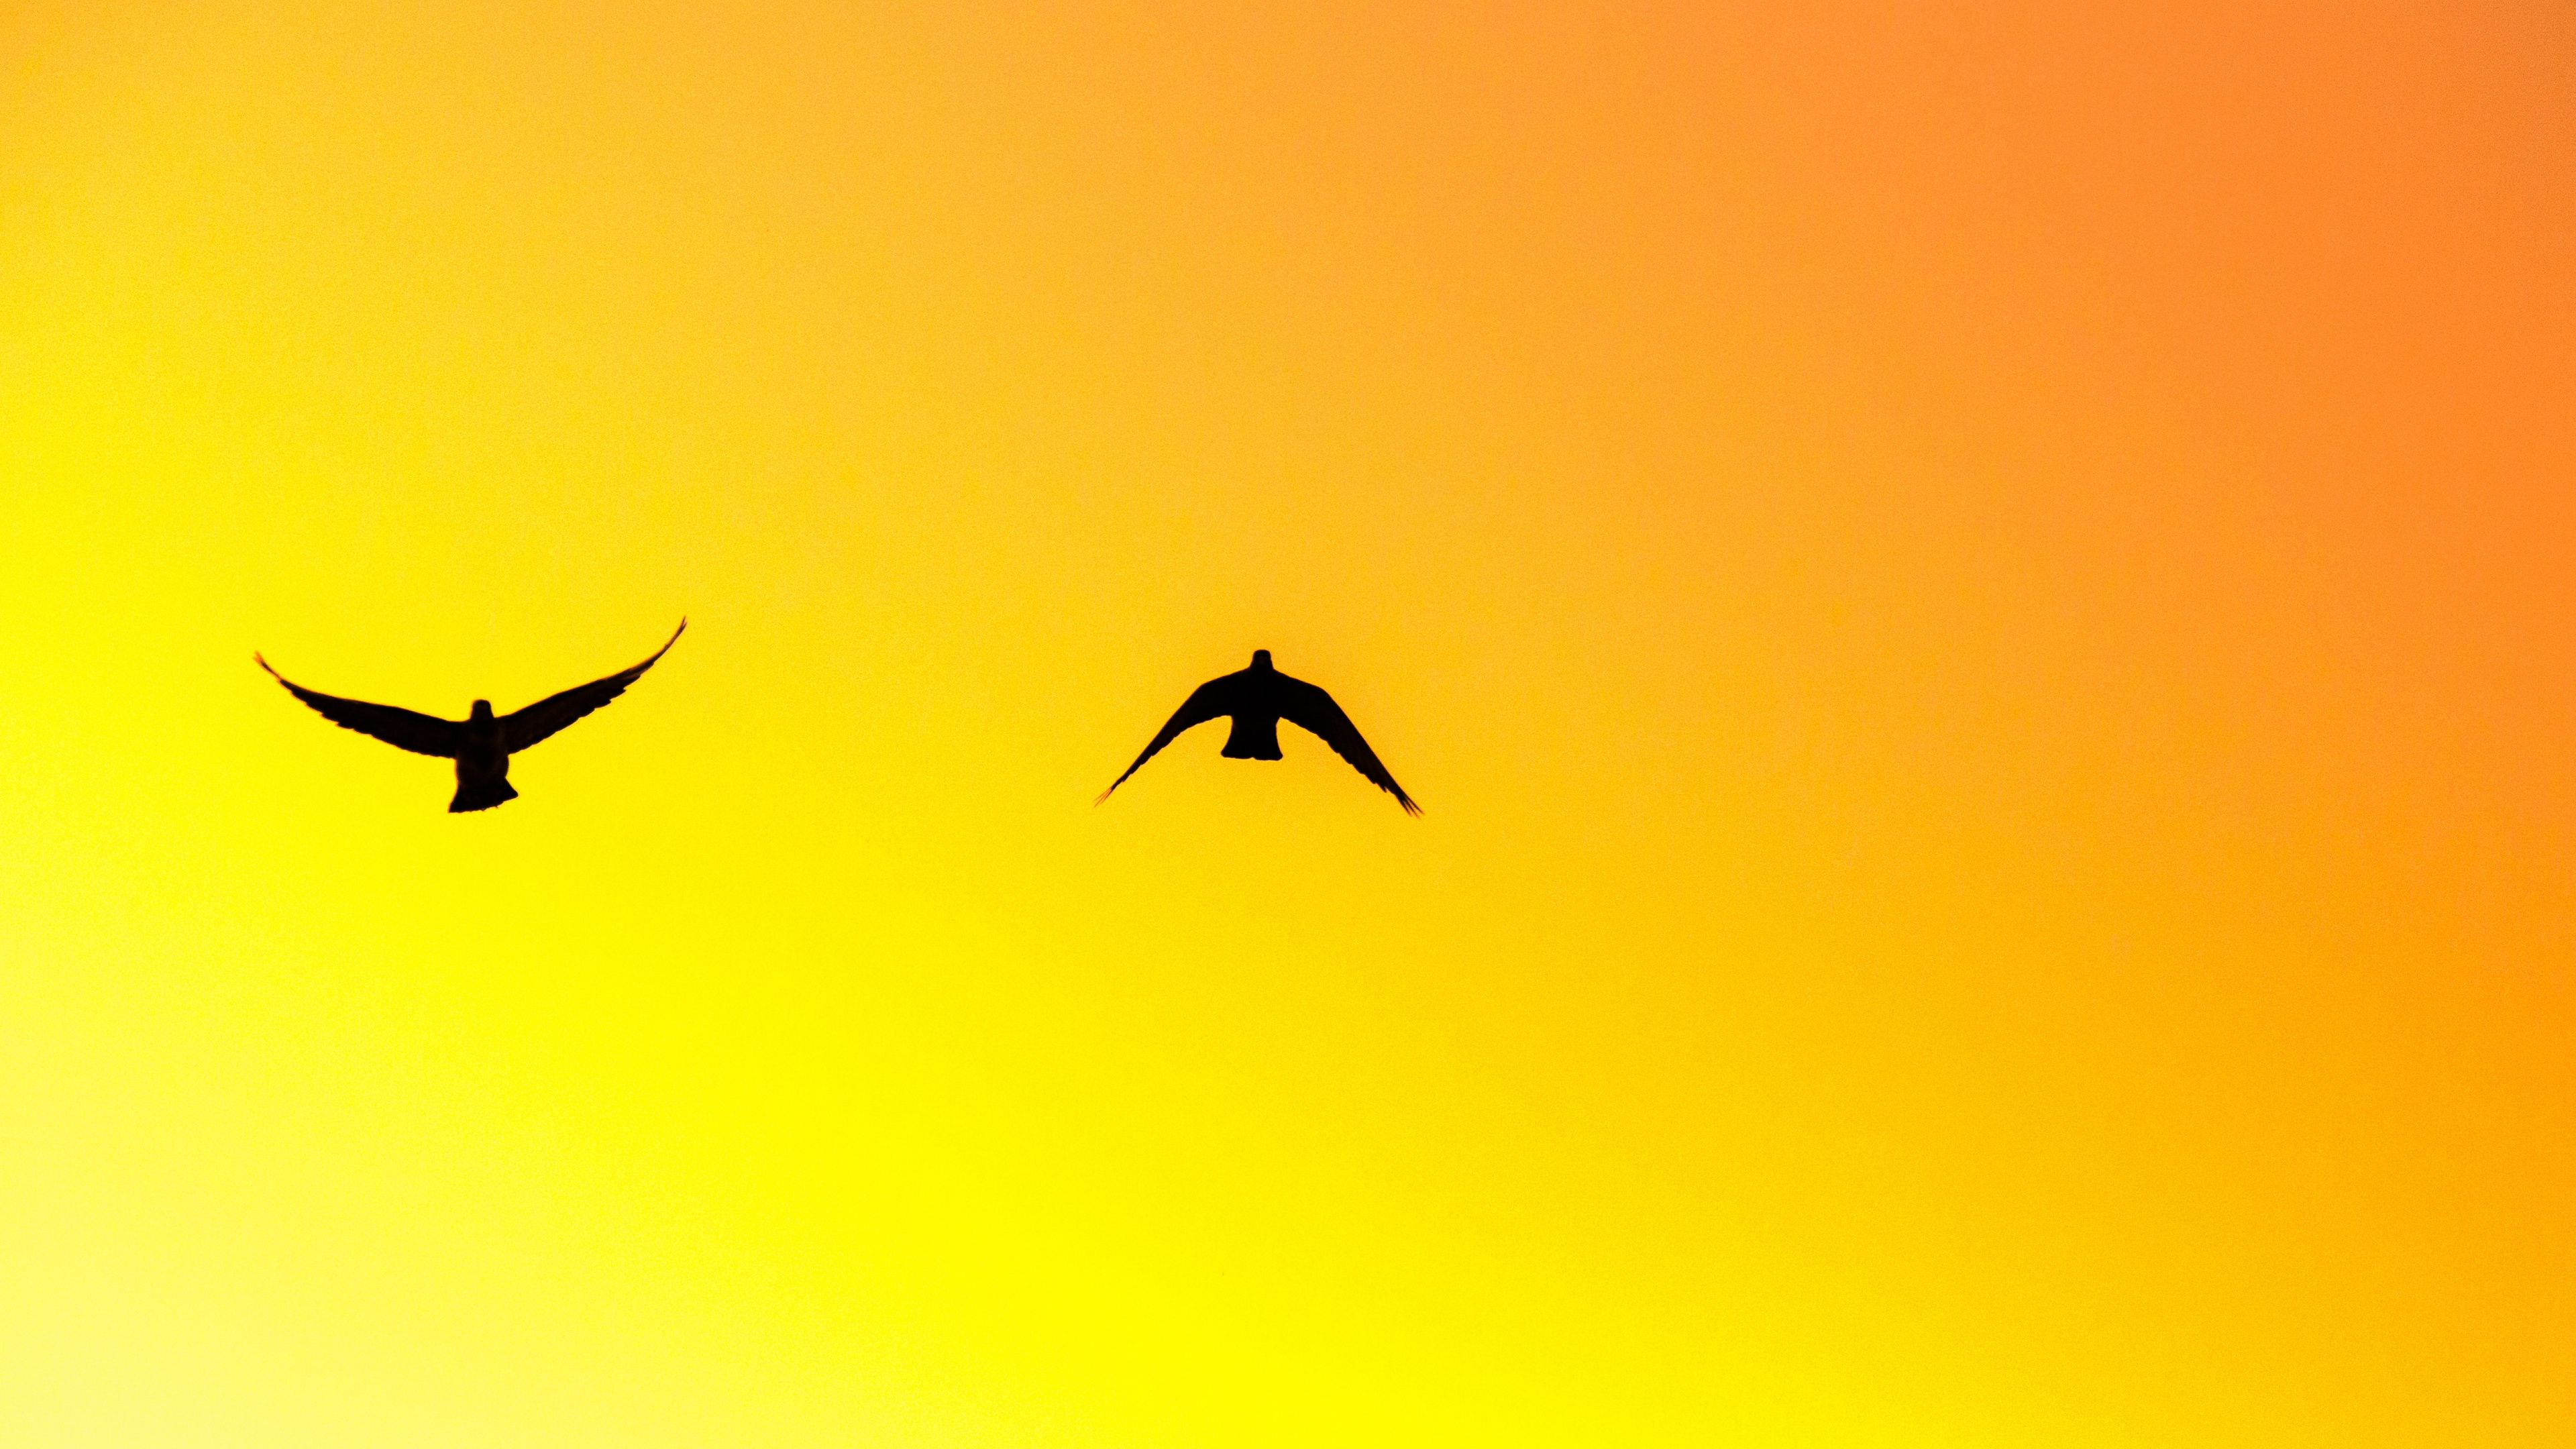 Download Birds pair, yellow sky, sunset, silhouette wallpaper, 3840x 4K UHD 16: Widescreen